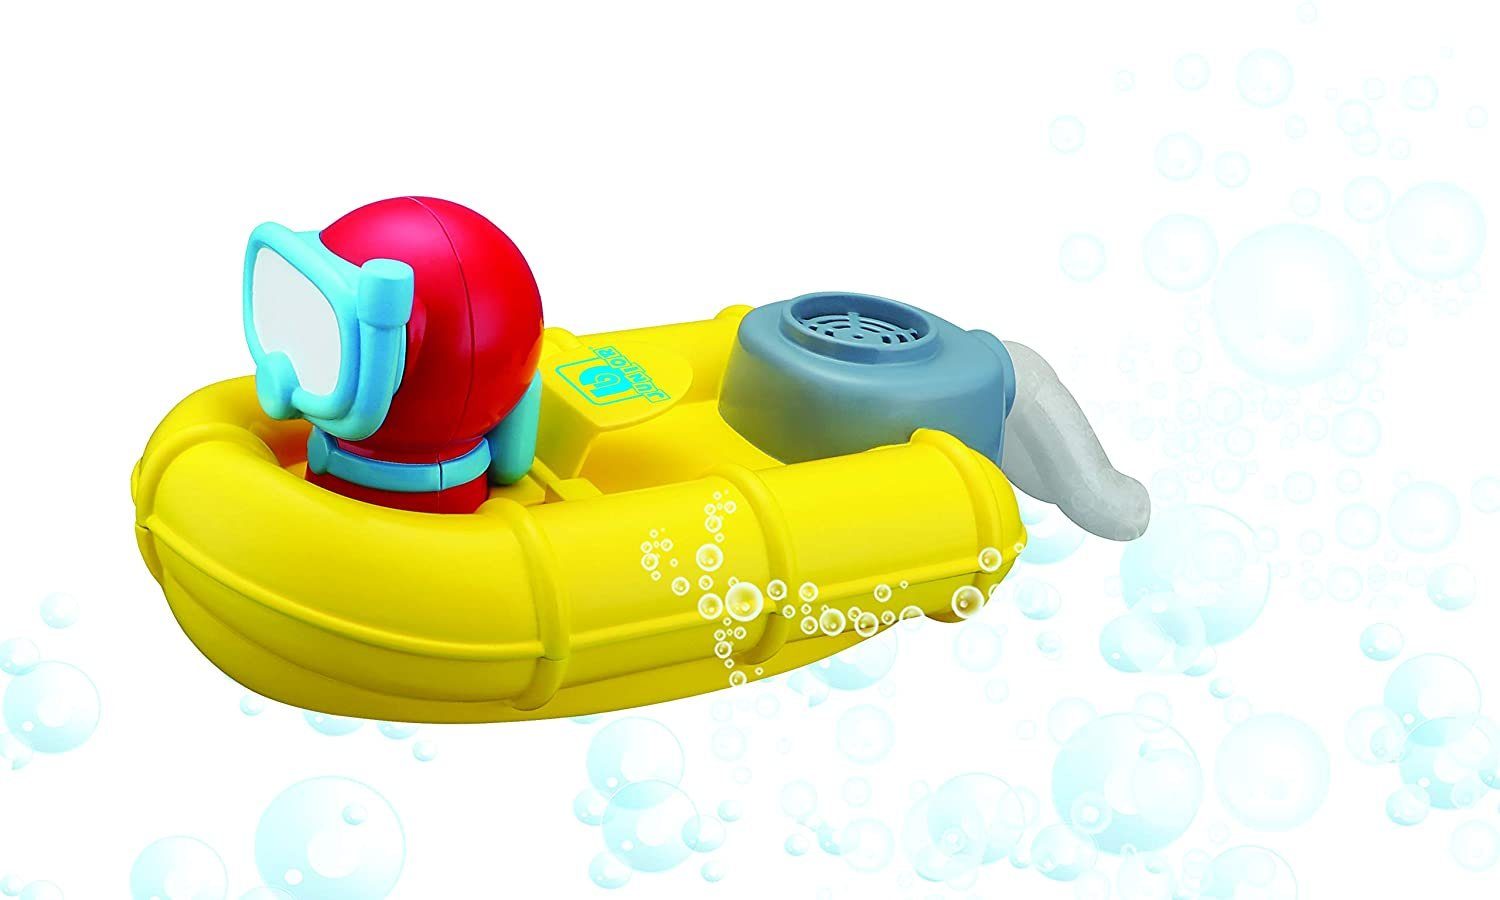 bbJunior Badespielzeug Spielzeugboot - Splash 'n Play Rescue Raft mit Taucher, mit Blasen-Sprudel-Funktion